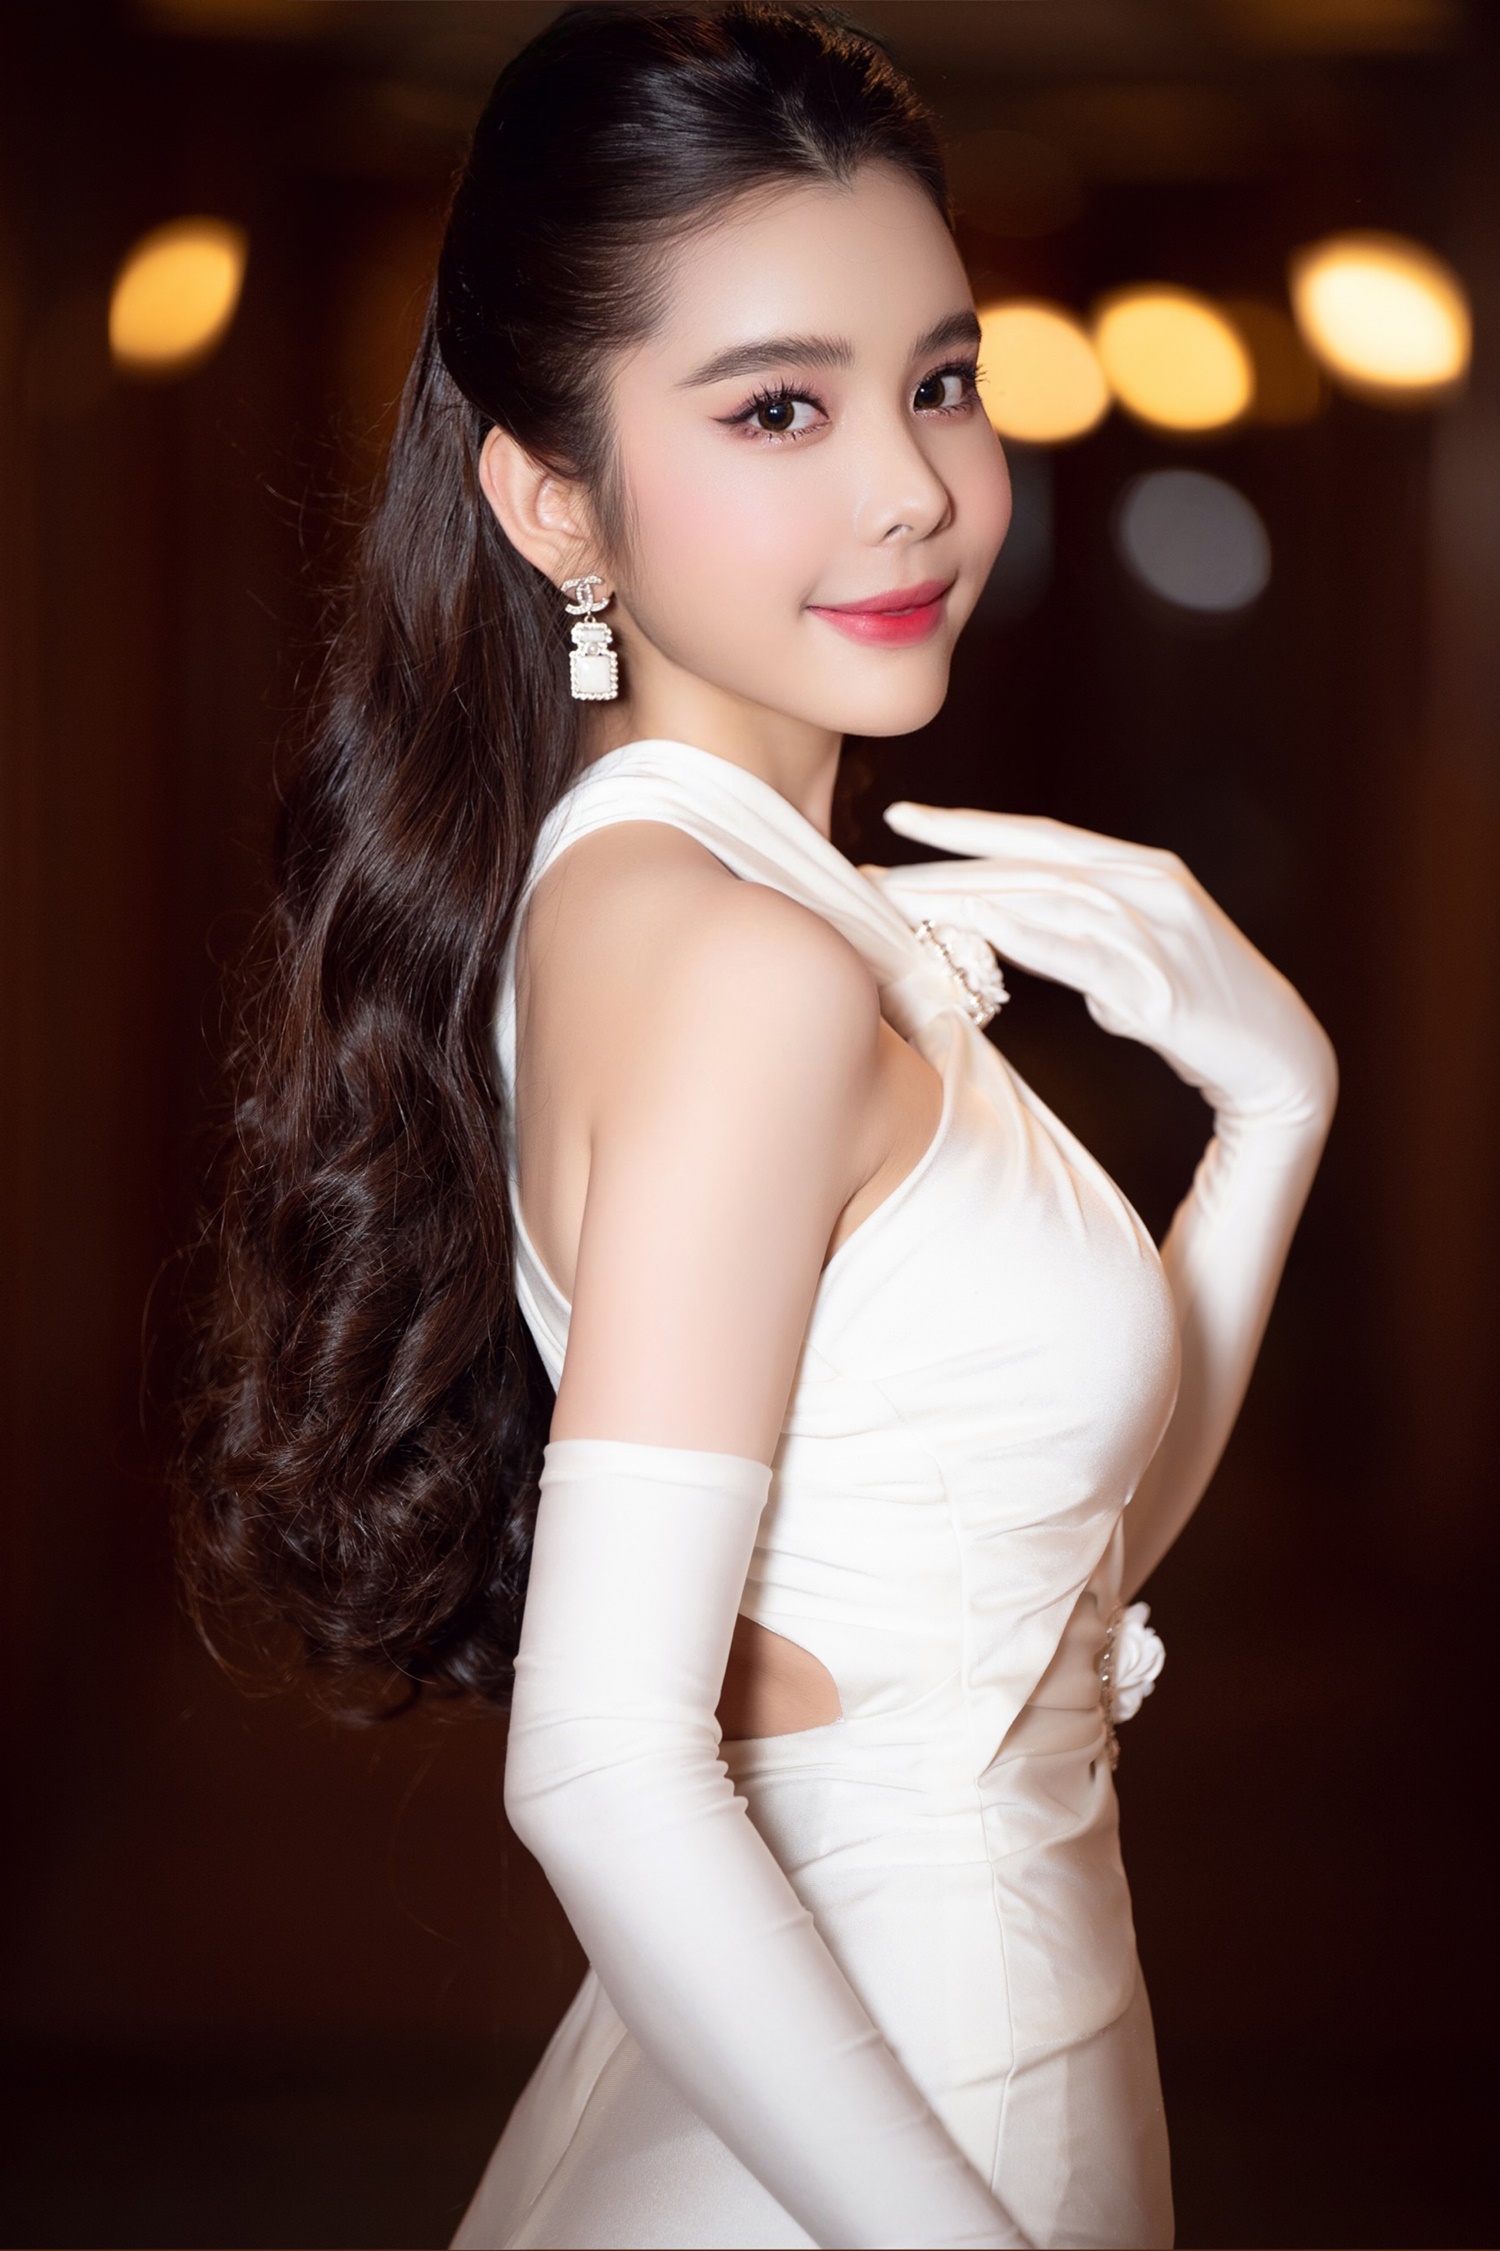 Nói về công việc hiện tại, Hoa hậu Huỳnh Vy cho biết cô vẫn đang chuyên tâm cho công việc kinh doanh của mình và ấp ủ một số kế hoạch riêng sớm thực hiện và trình làng công chúng trong thời gian tới.   